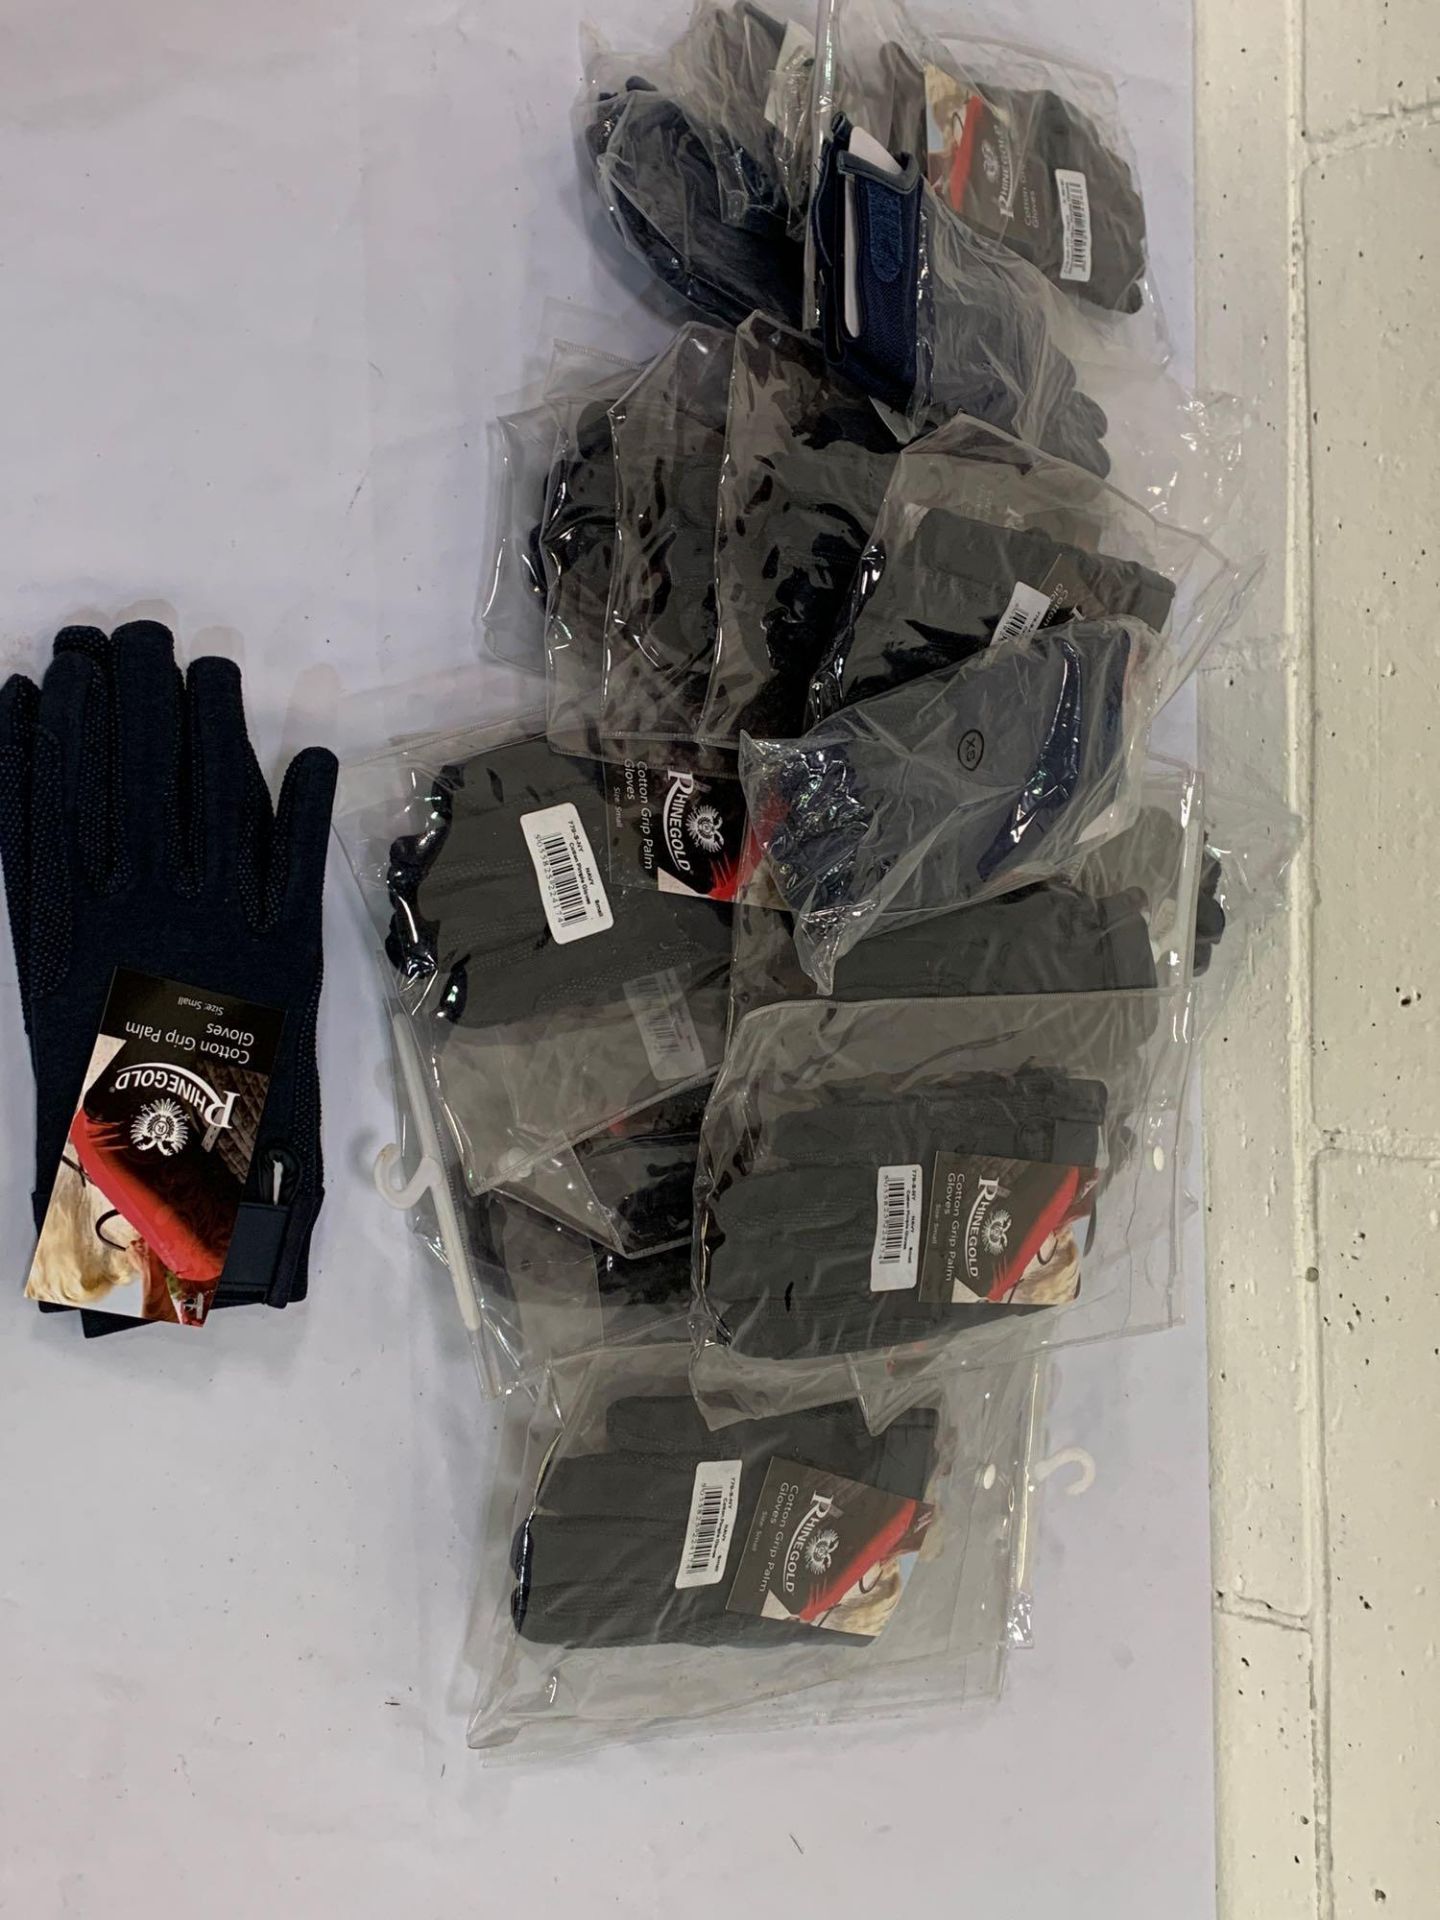 Twenty-three pairs of gloves